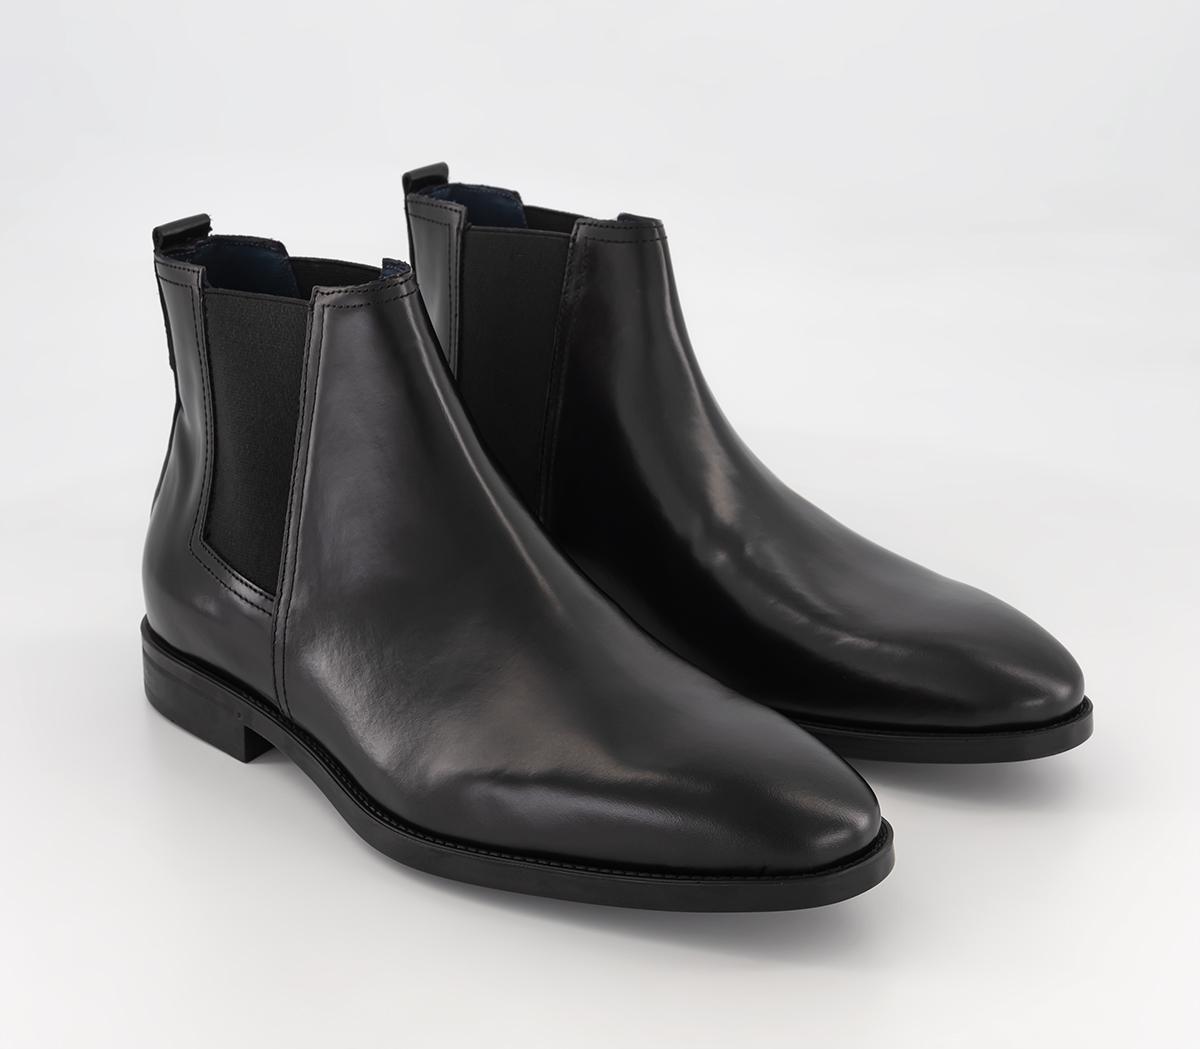 Poste Peterson Chelsea Boots Black Leather - Men’s Boots